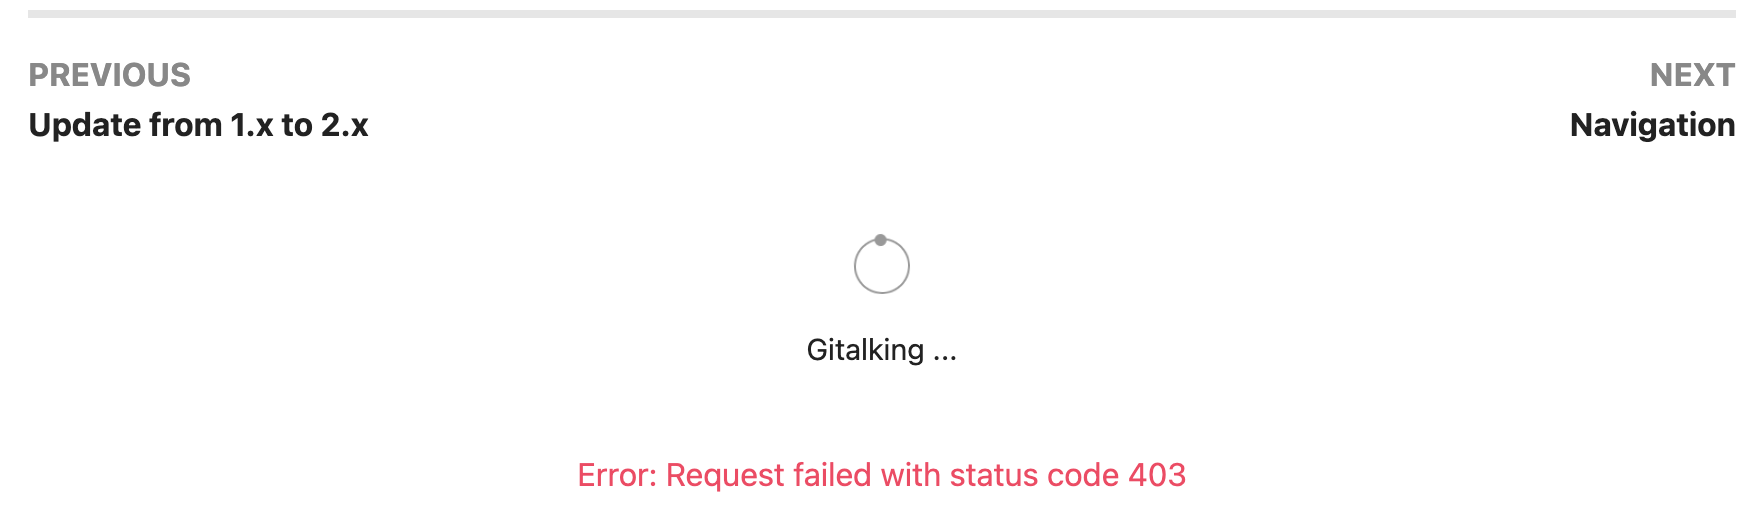 gitalk_fail